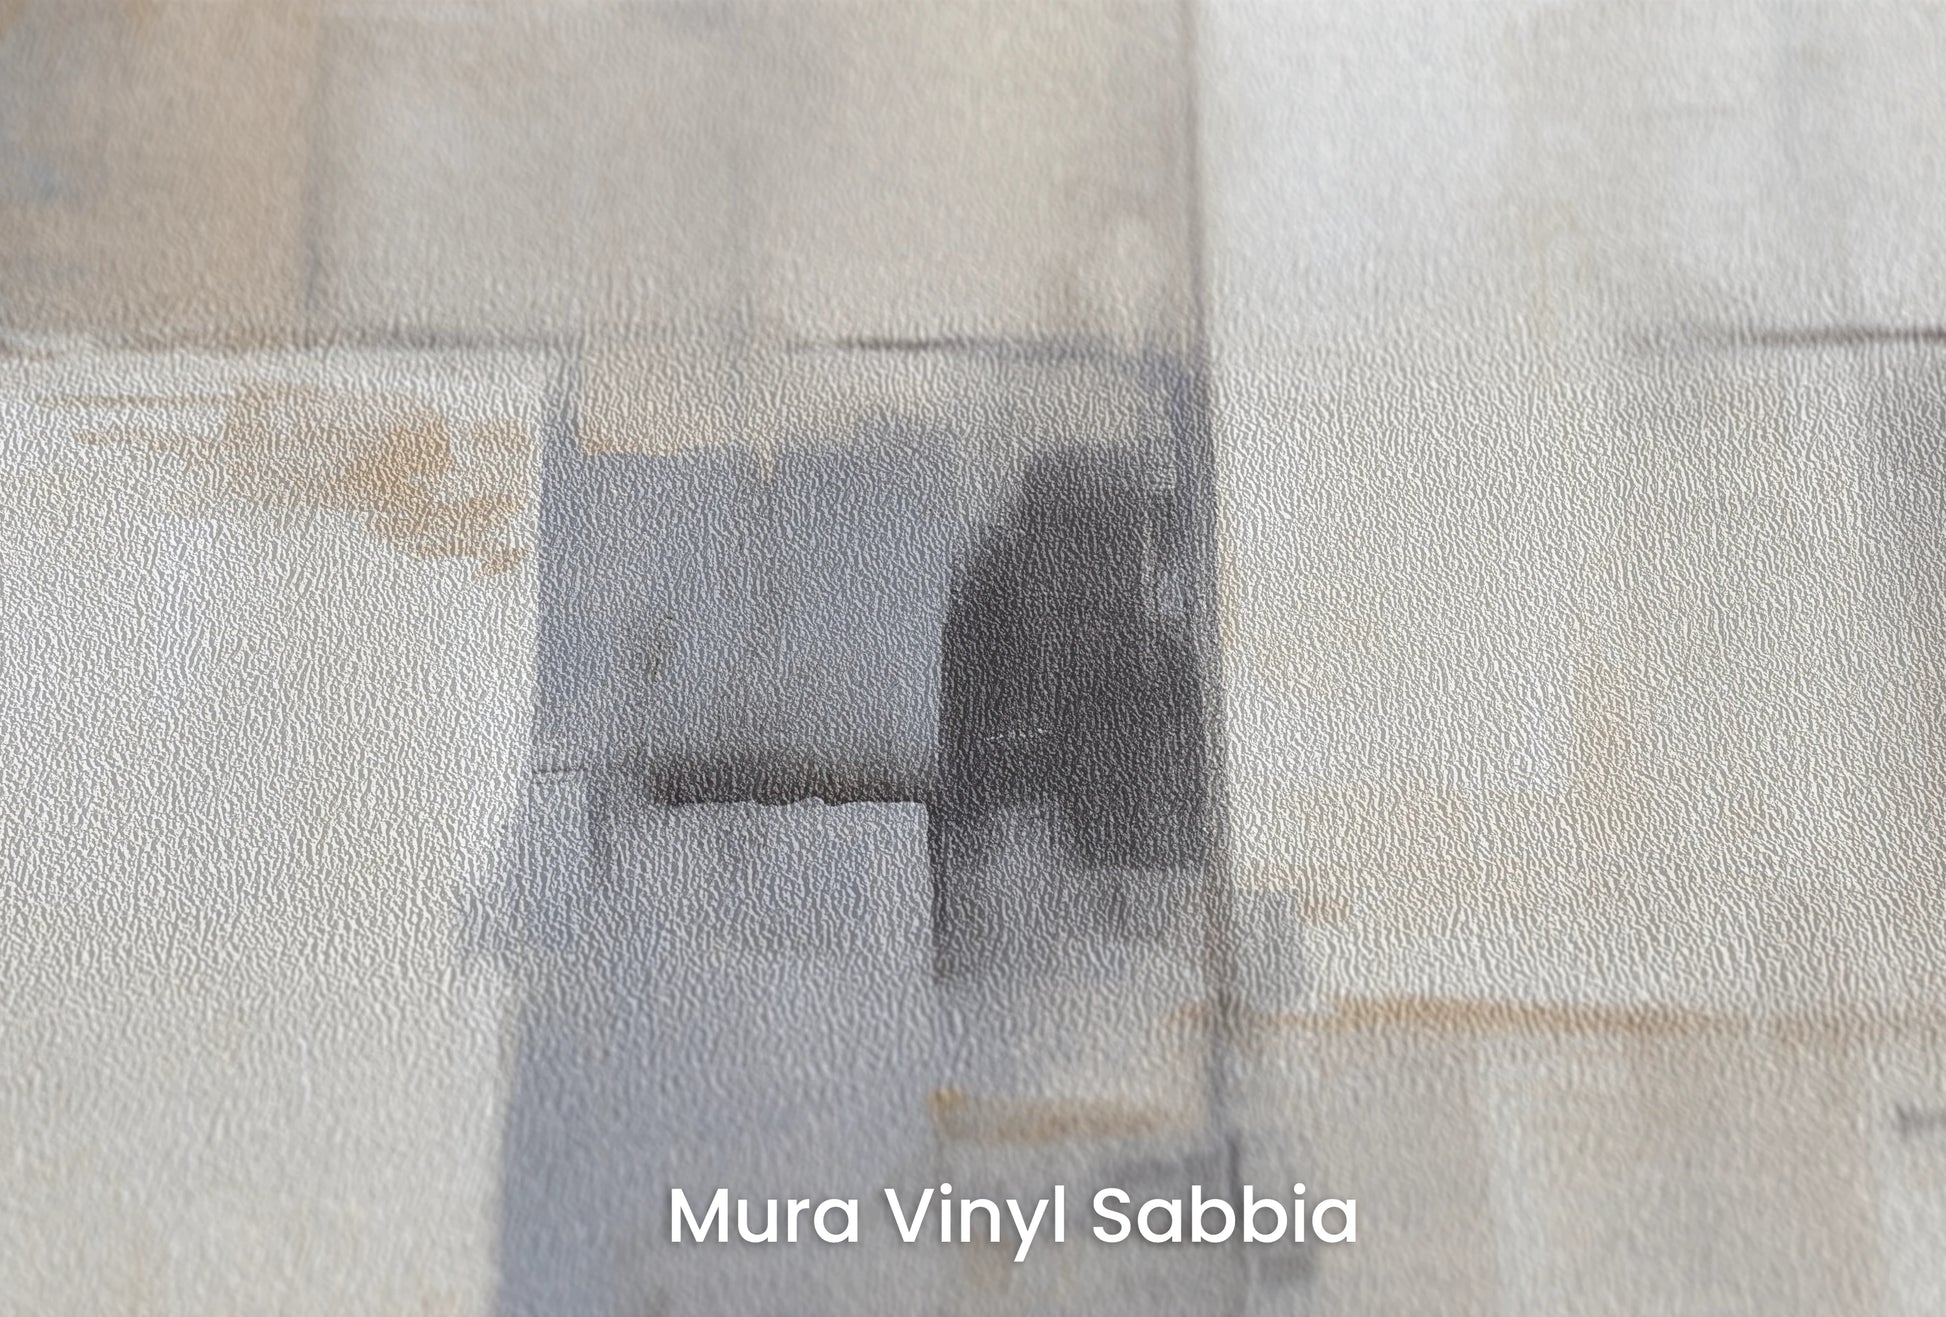 Zbliżenie na artystyczną fototapetę o nazwie Muted Tones na podłożu Mura Vinyl Sabbia struktura grubego ziarna piasku.